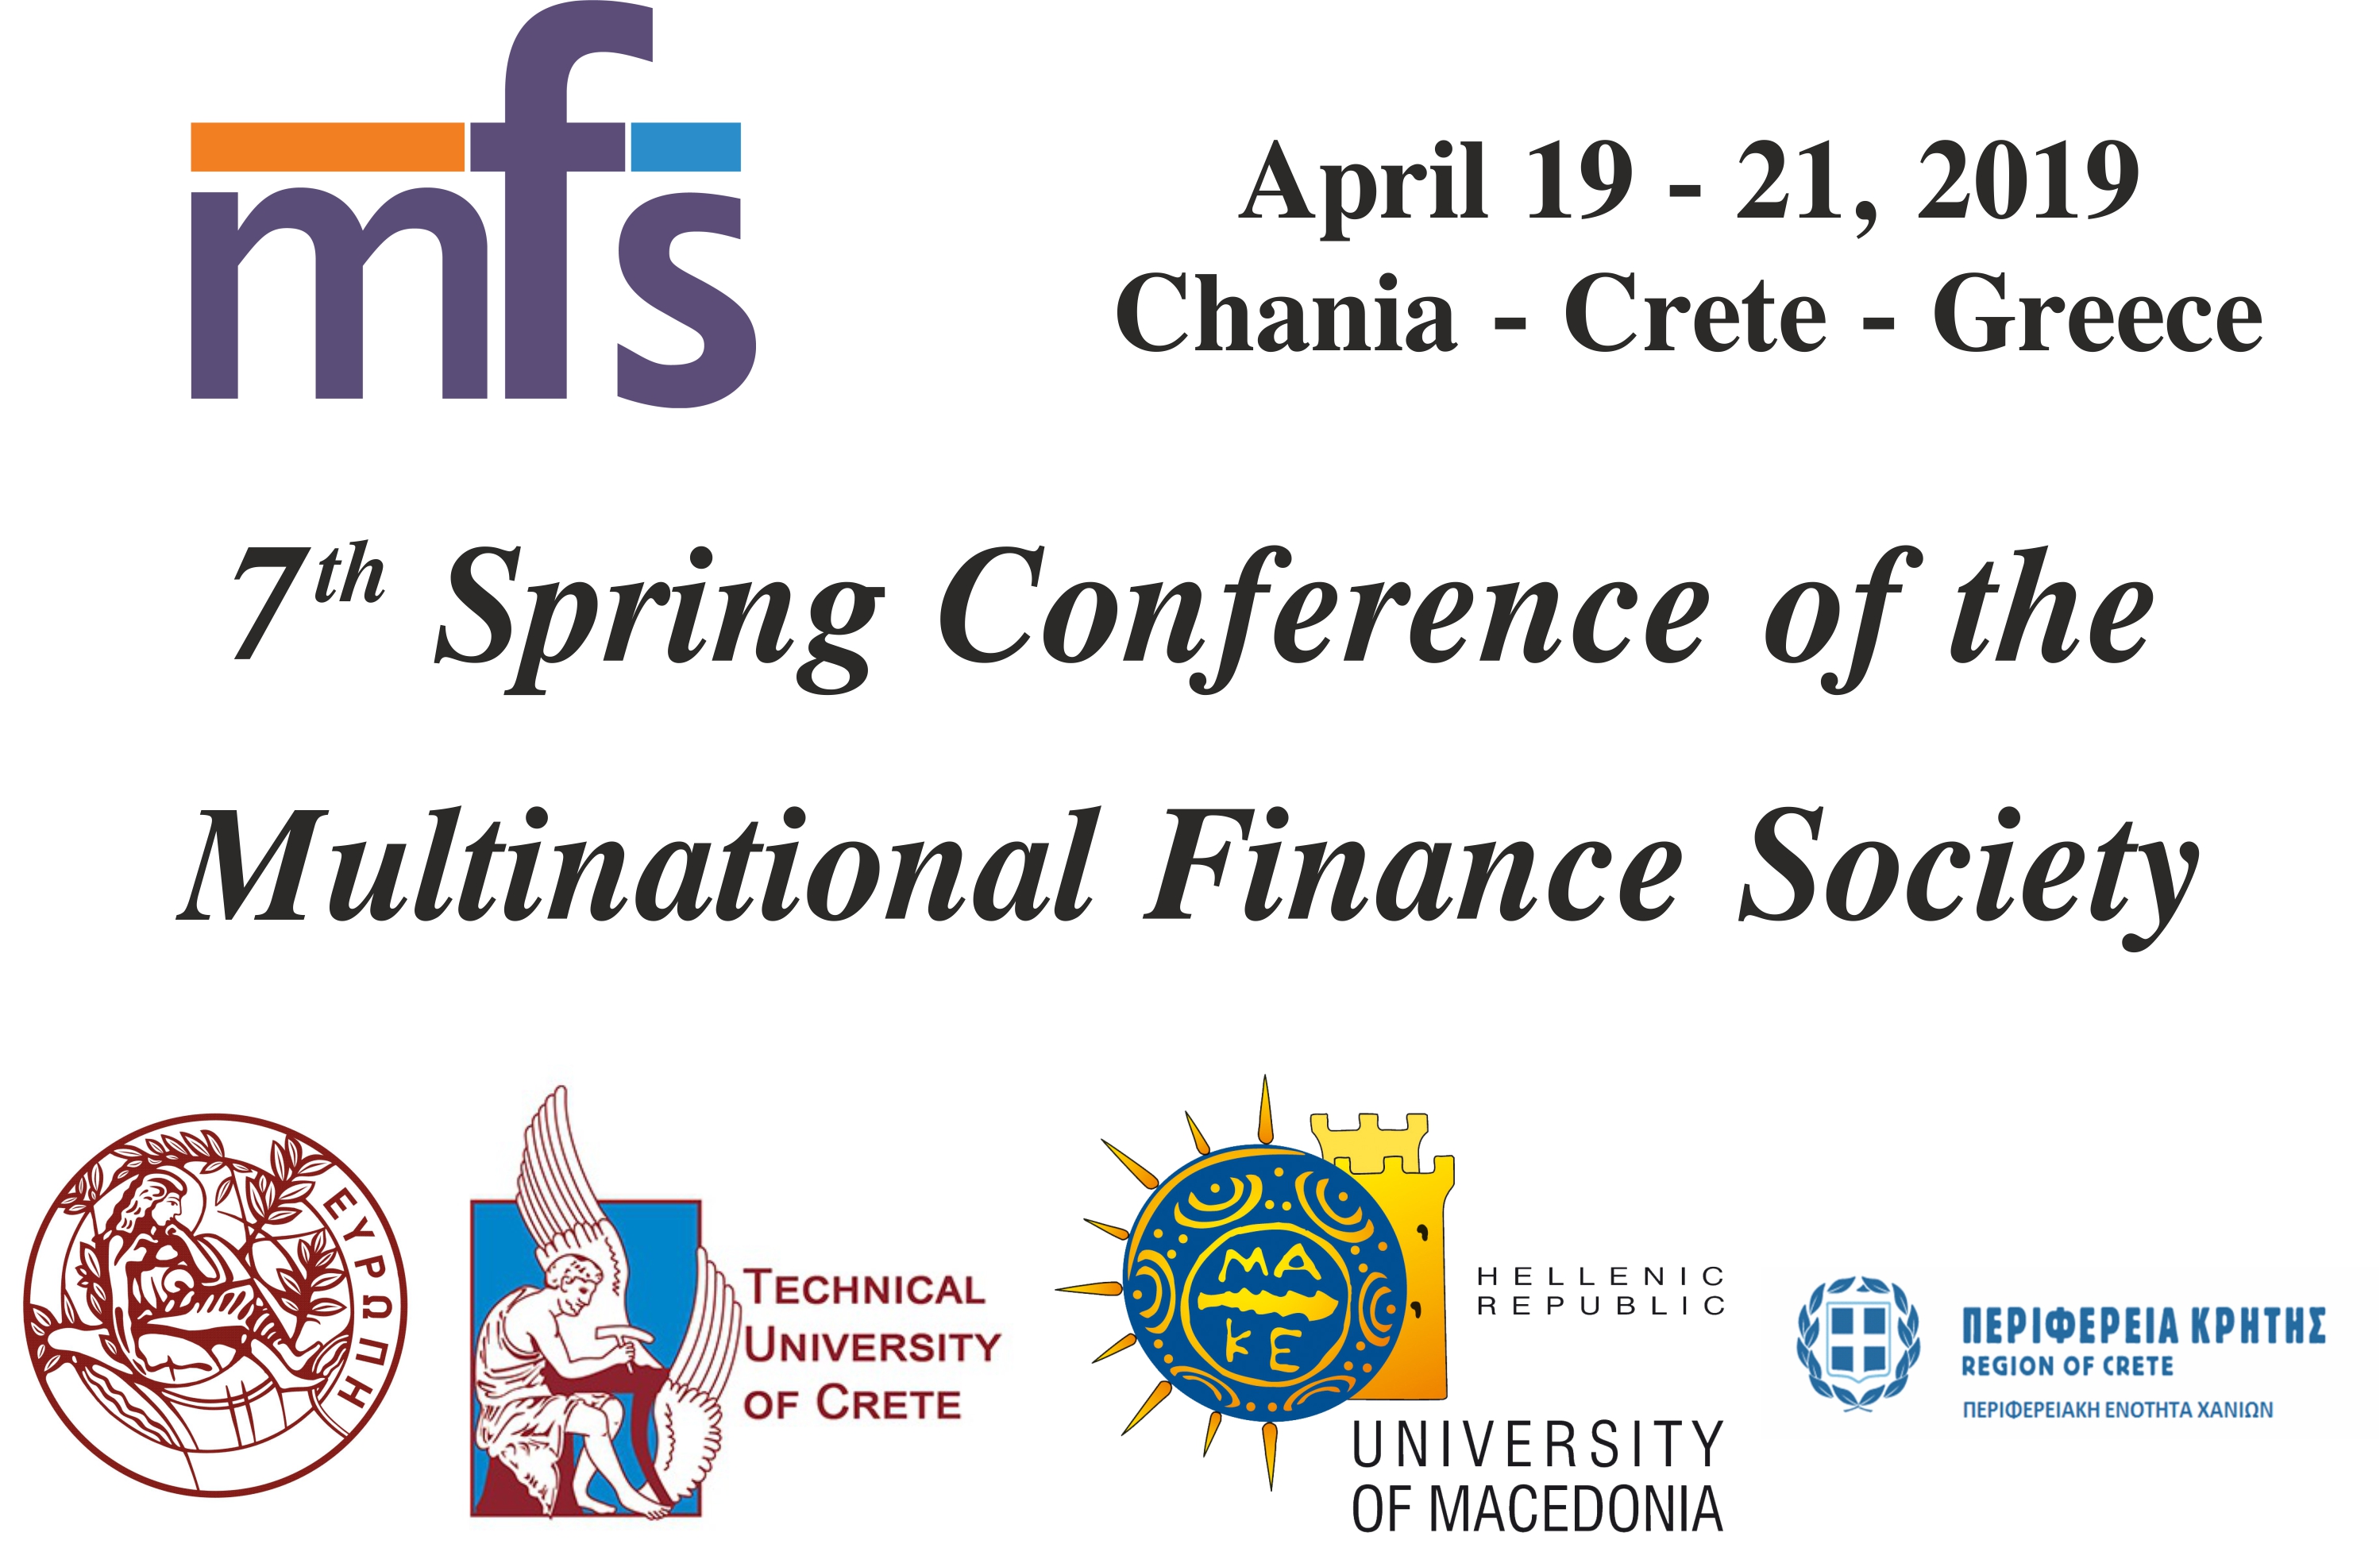 Διεθνές επιστημονικό συνέδριο στα Χανιά για θέματα Χρηματοοικονομικής Επιστήμης